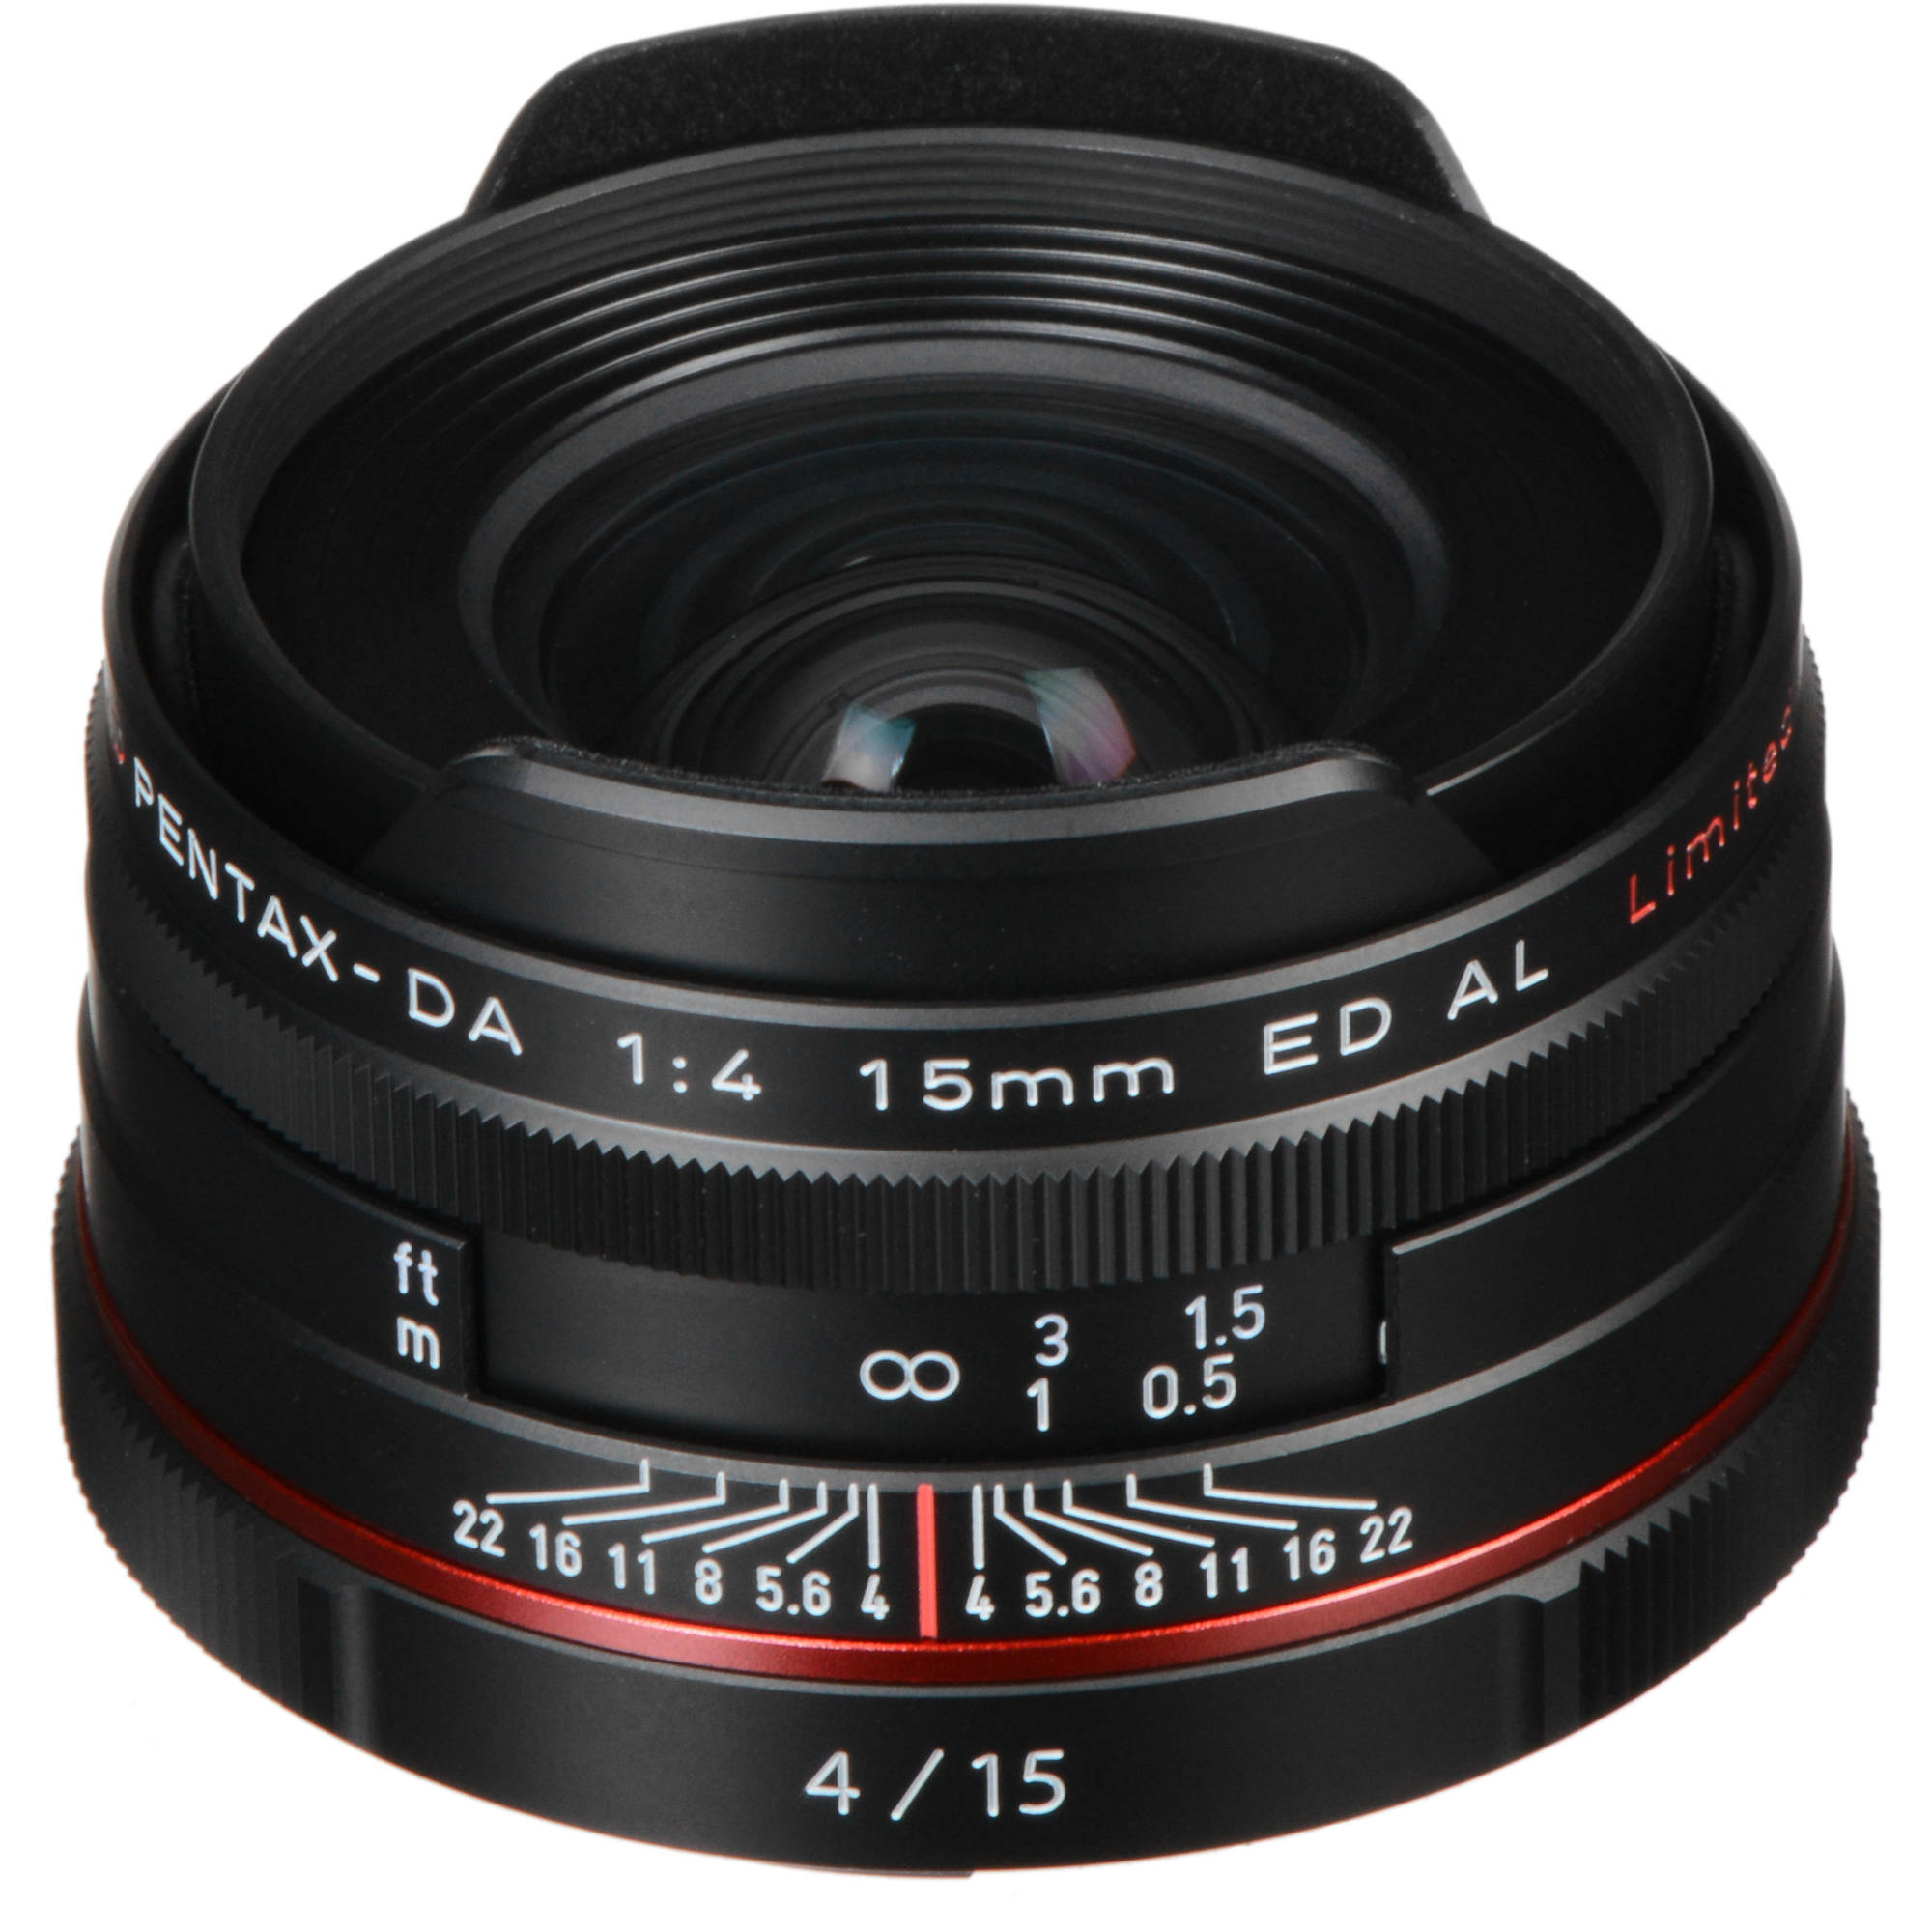 Pentax Hd Pentax Da 15mm F 4 Ed Al Limited Lens Black